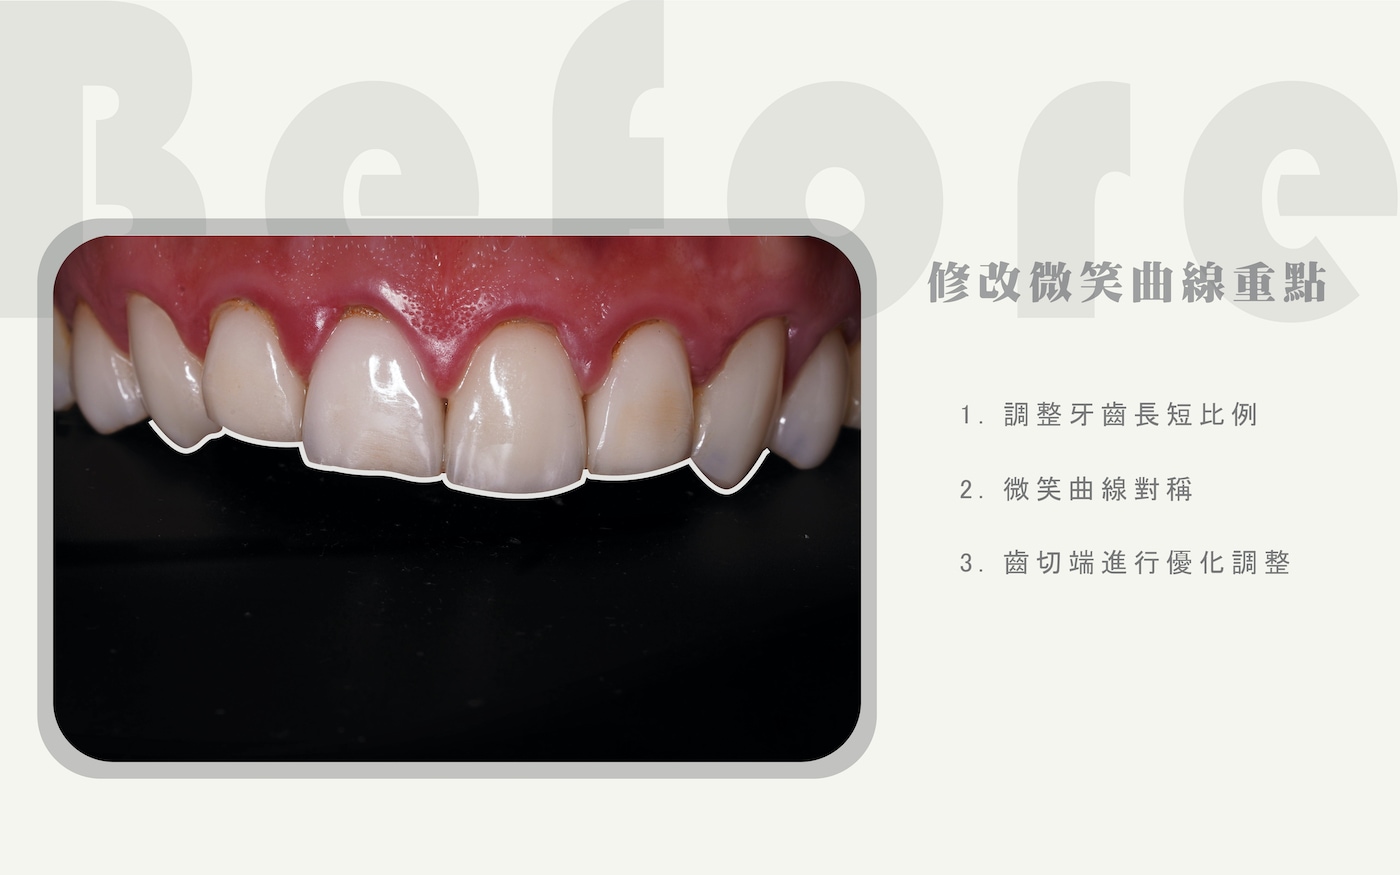 卓院長分析李唯楓的微笑曲線修改重點，包含調整牙齒長短比例、微笑曲線對稱、牙齒切端優化調整